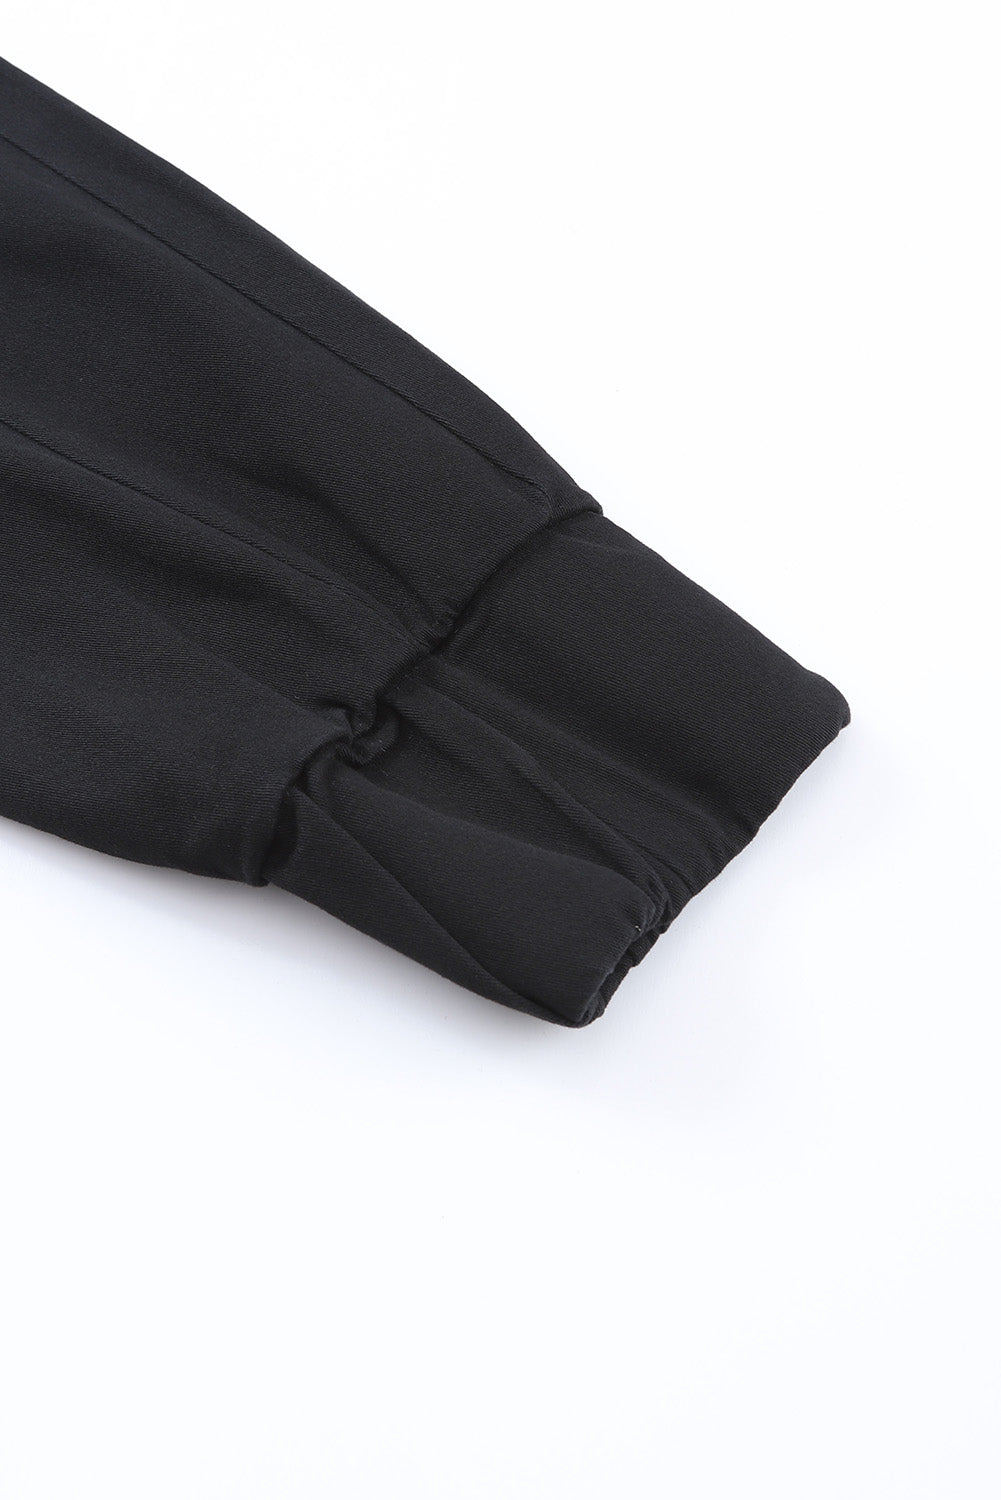 Pantaloni neri con tasche con coulisse a vita alta